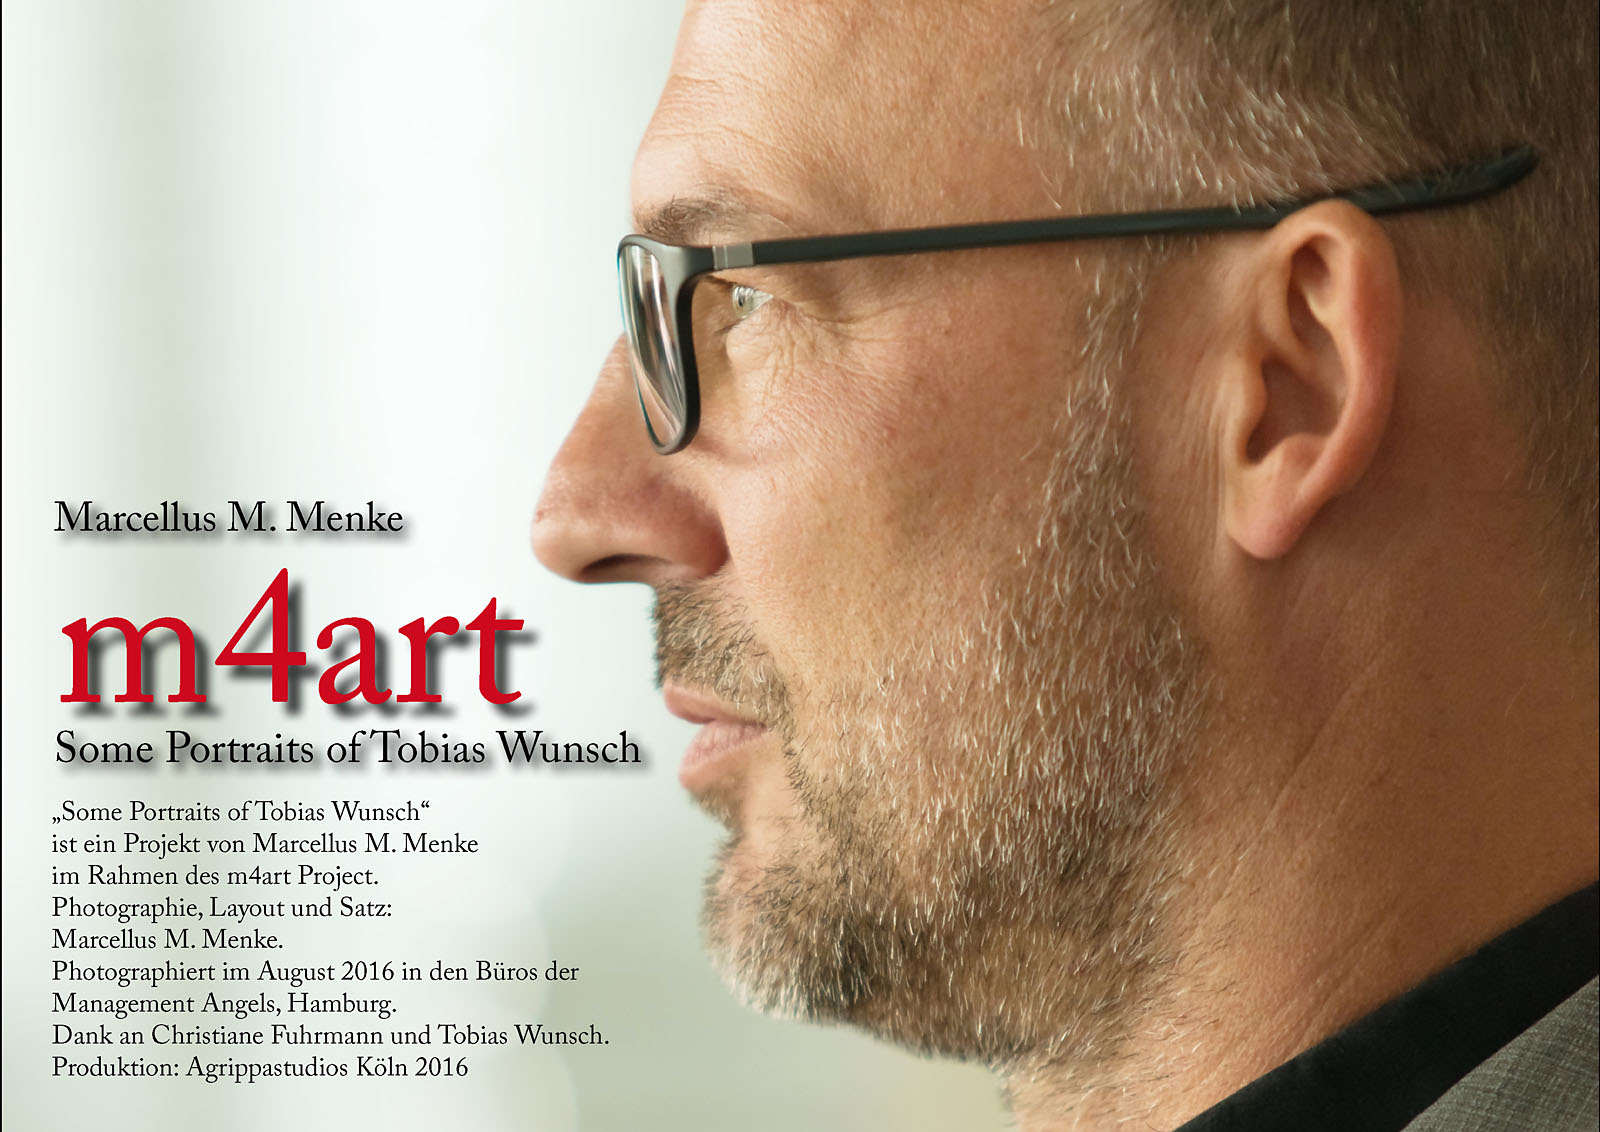 Marcellus M. Menke: Some Portraits of Tobias Wunsch, m4art screenBook, Hamburg und Köln 2016, Seite 6